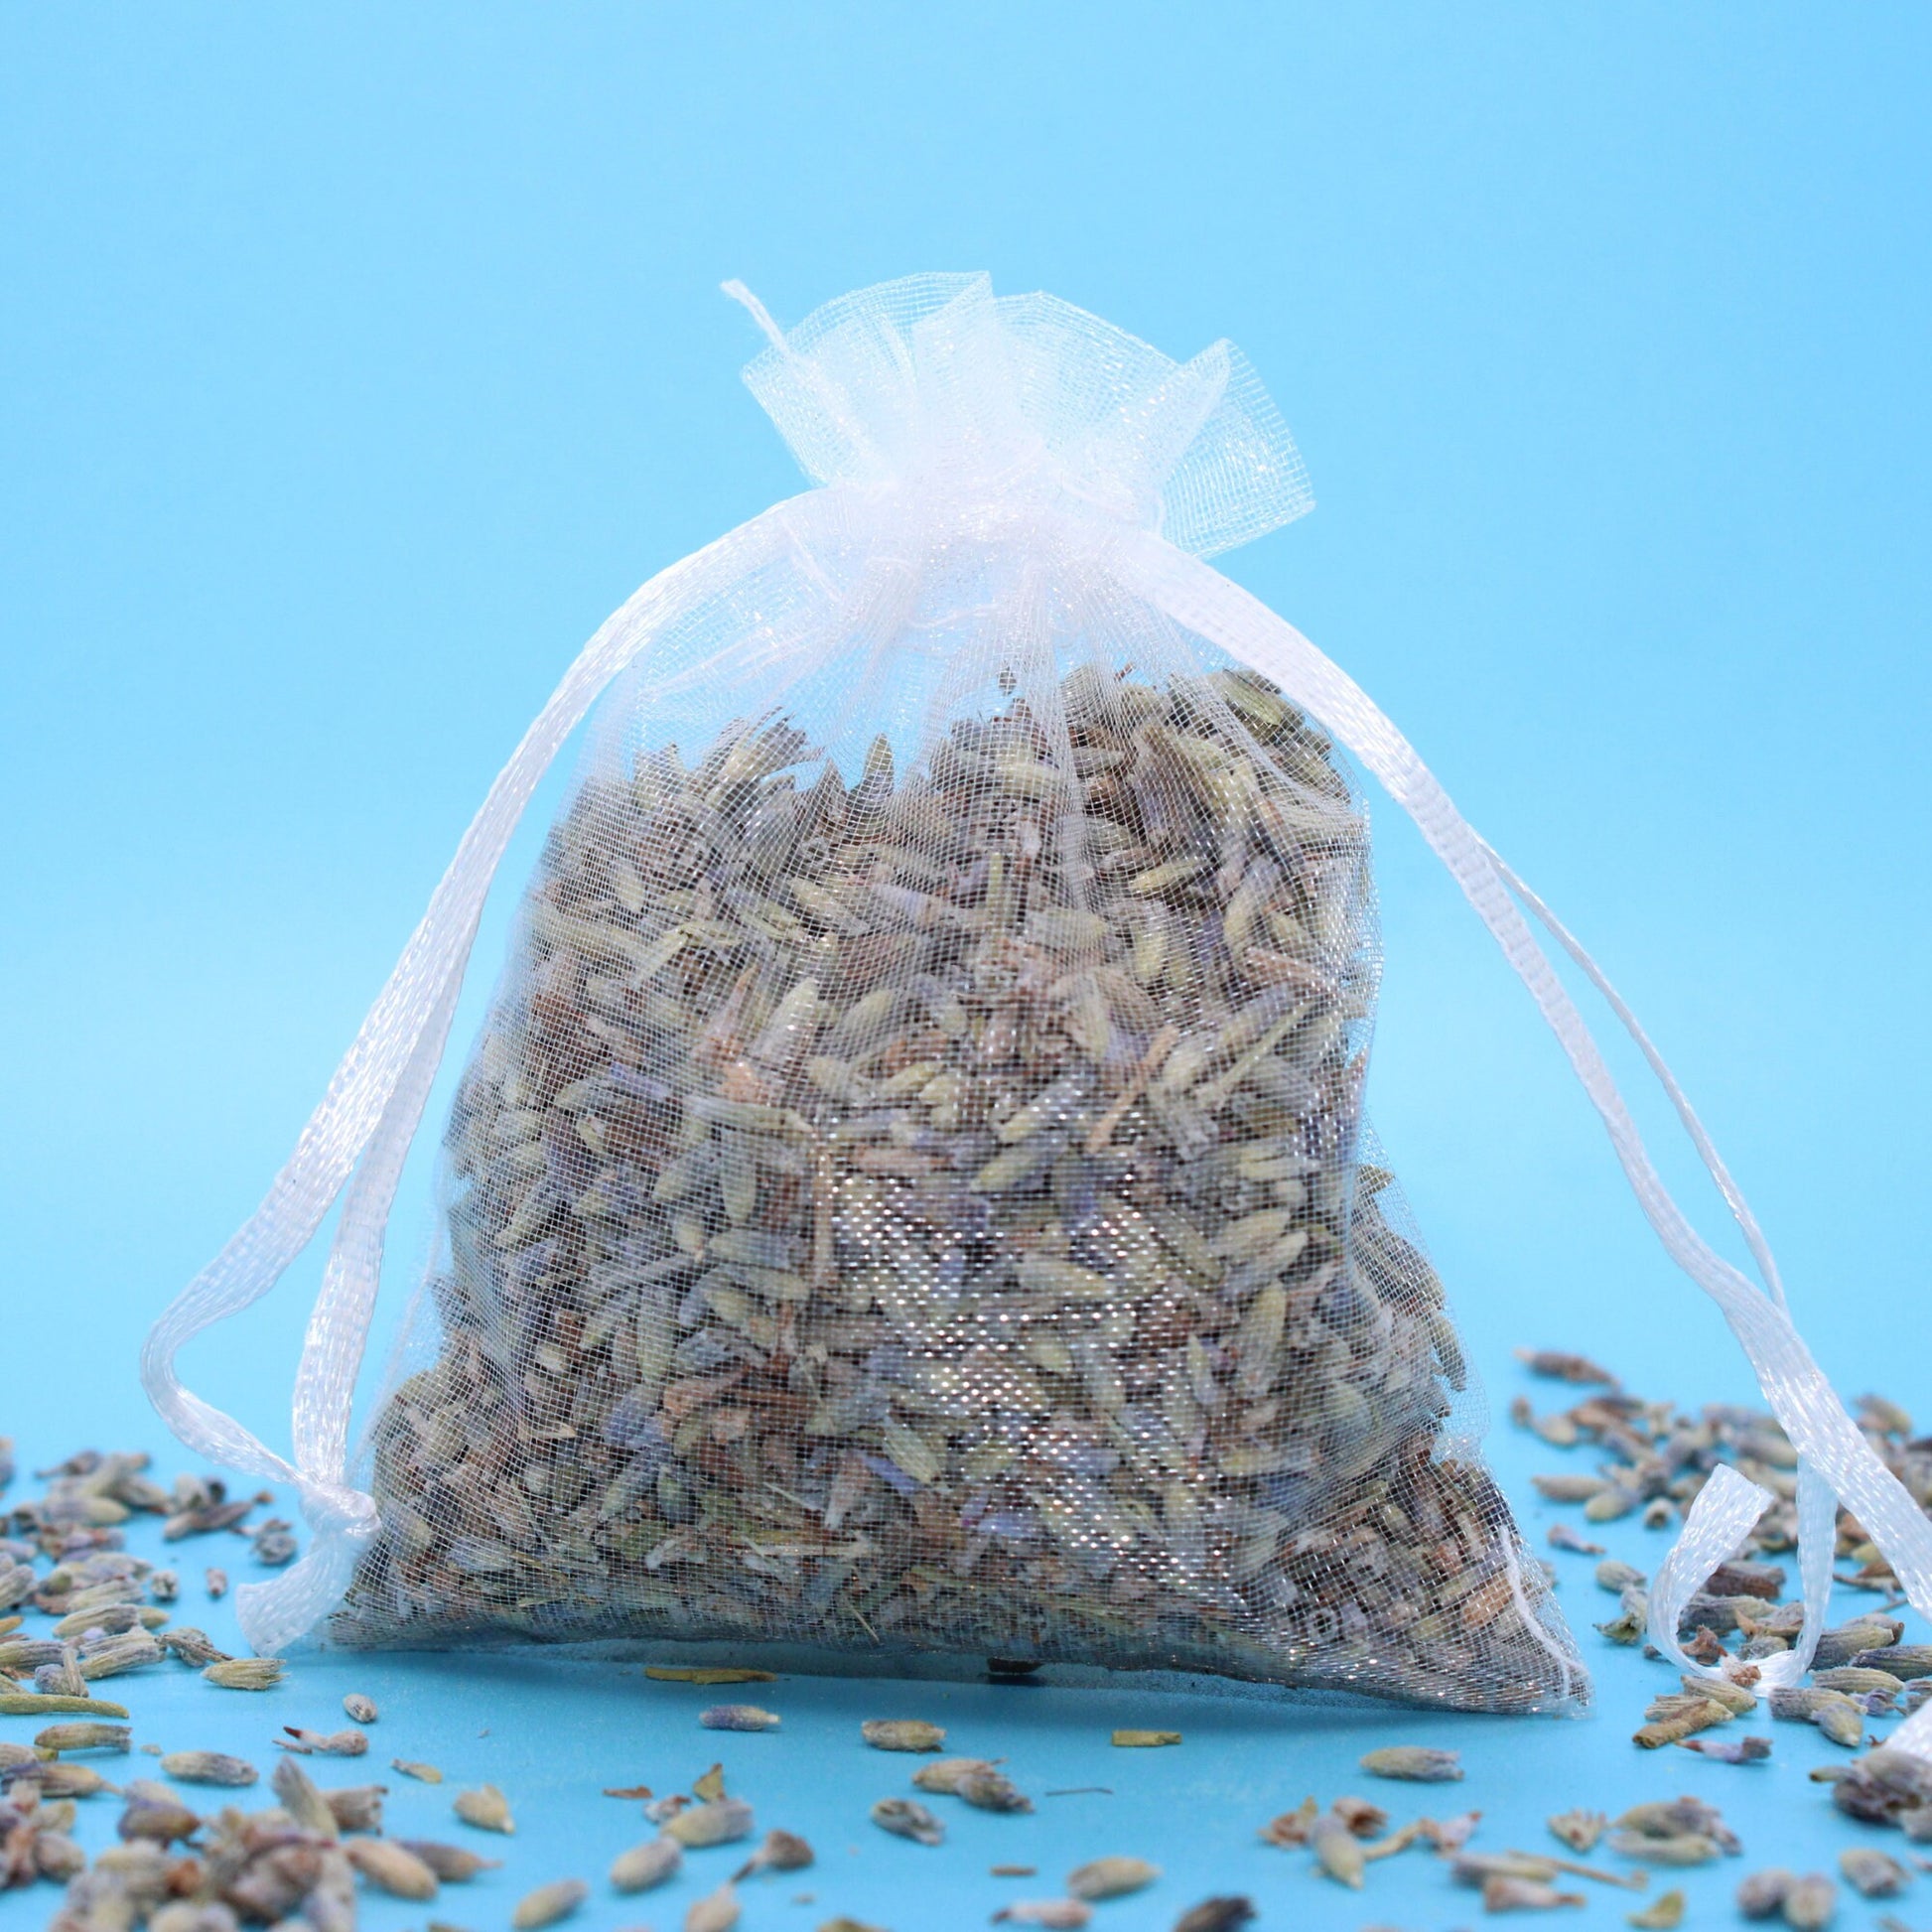 Lavendelsäckchen mit getrockneten Lavendelblüten - natürliche Regenerations- und Duftmischung